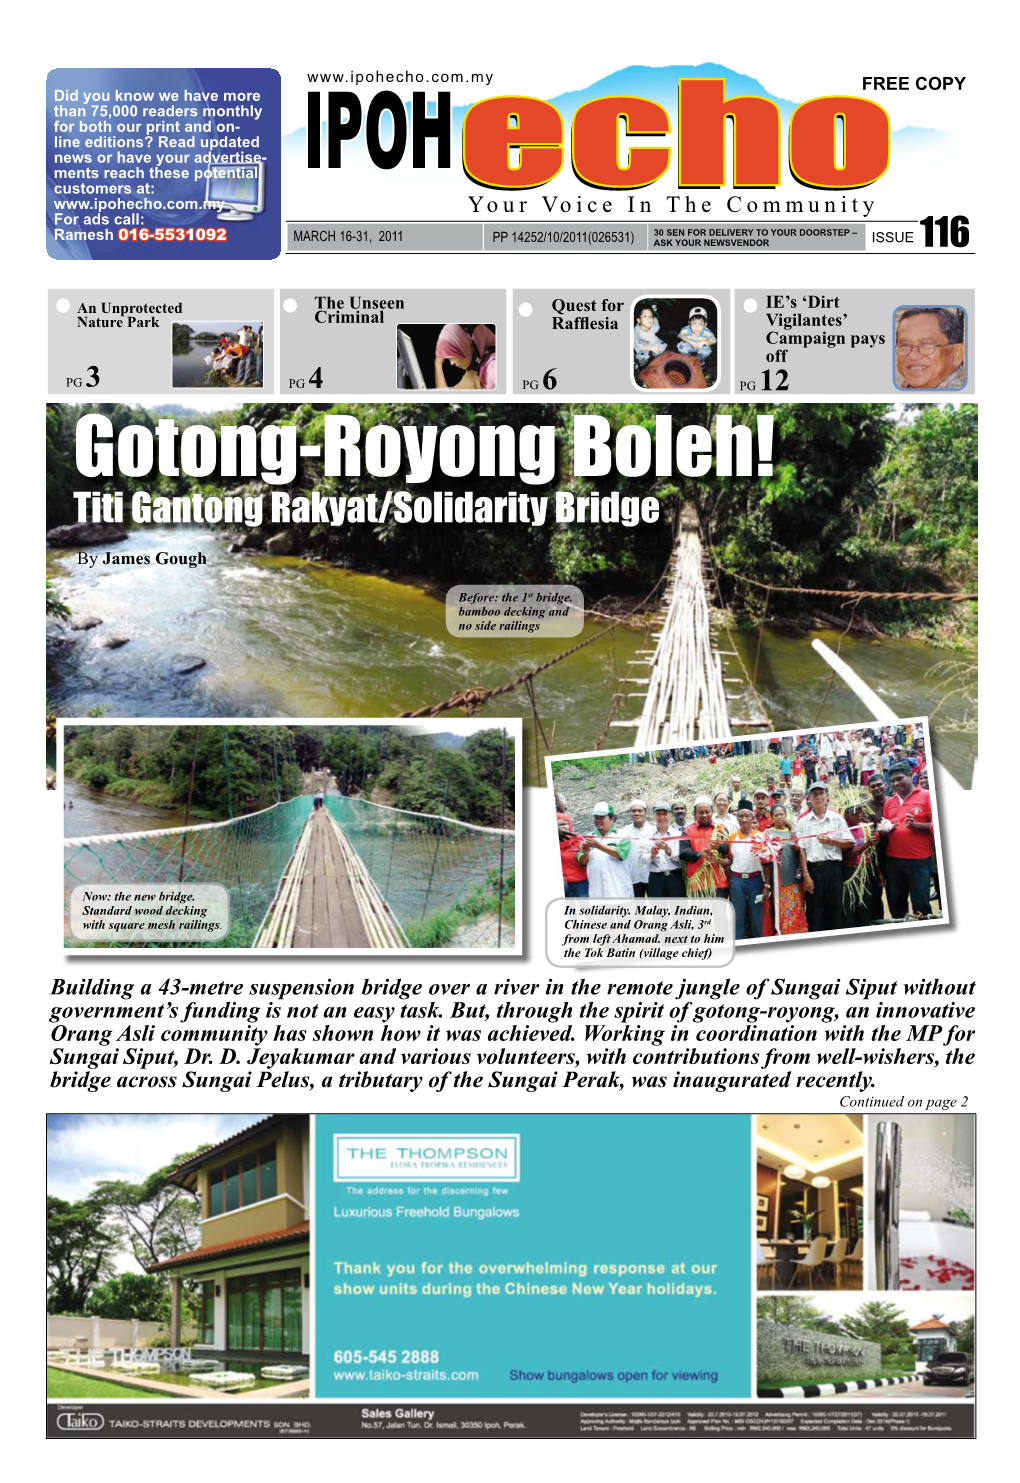 Gotong-Royong Boleh! Titi Gantong Rakyat/Solidarity Bridge by James Gough